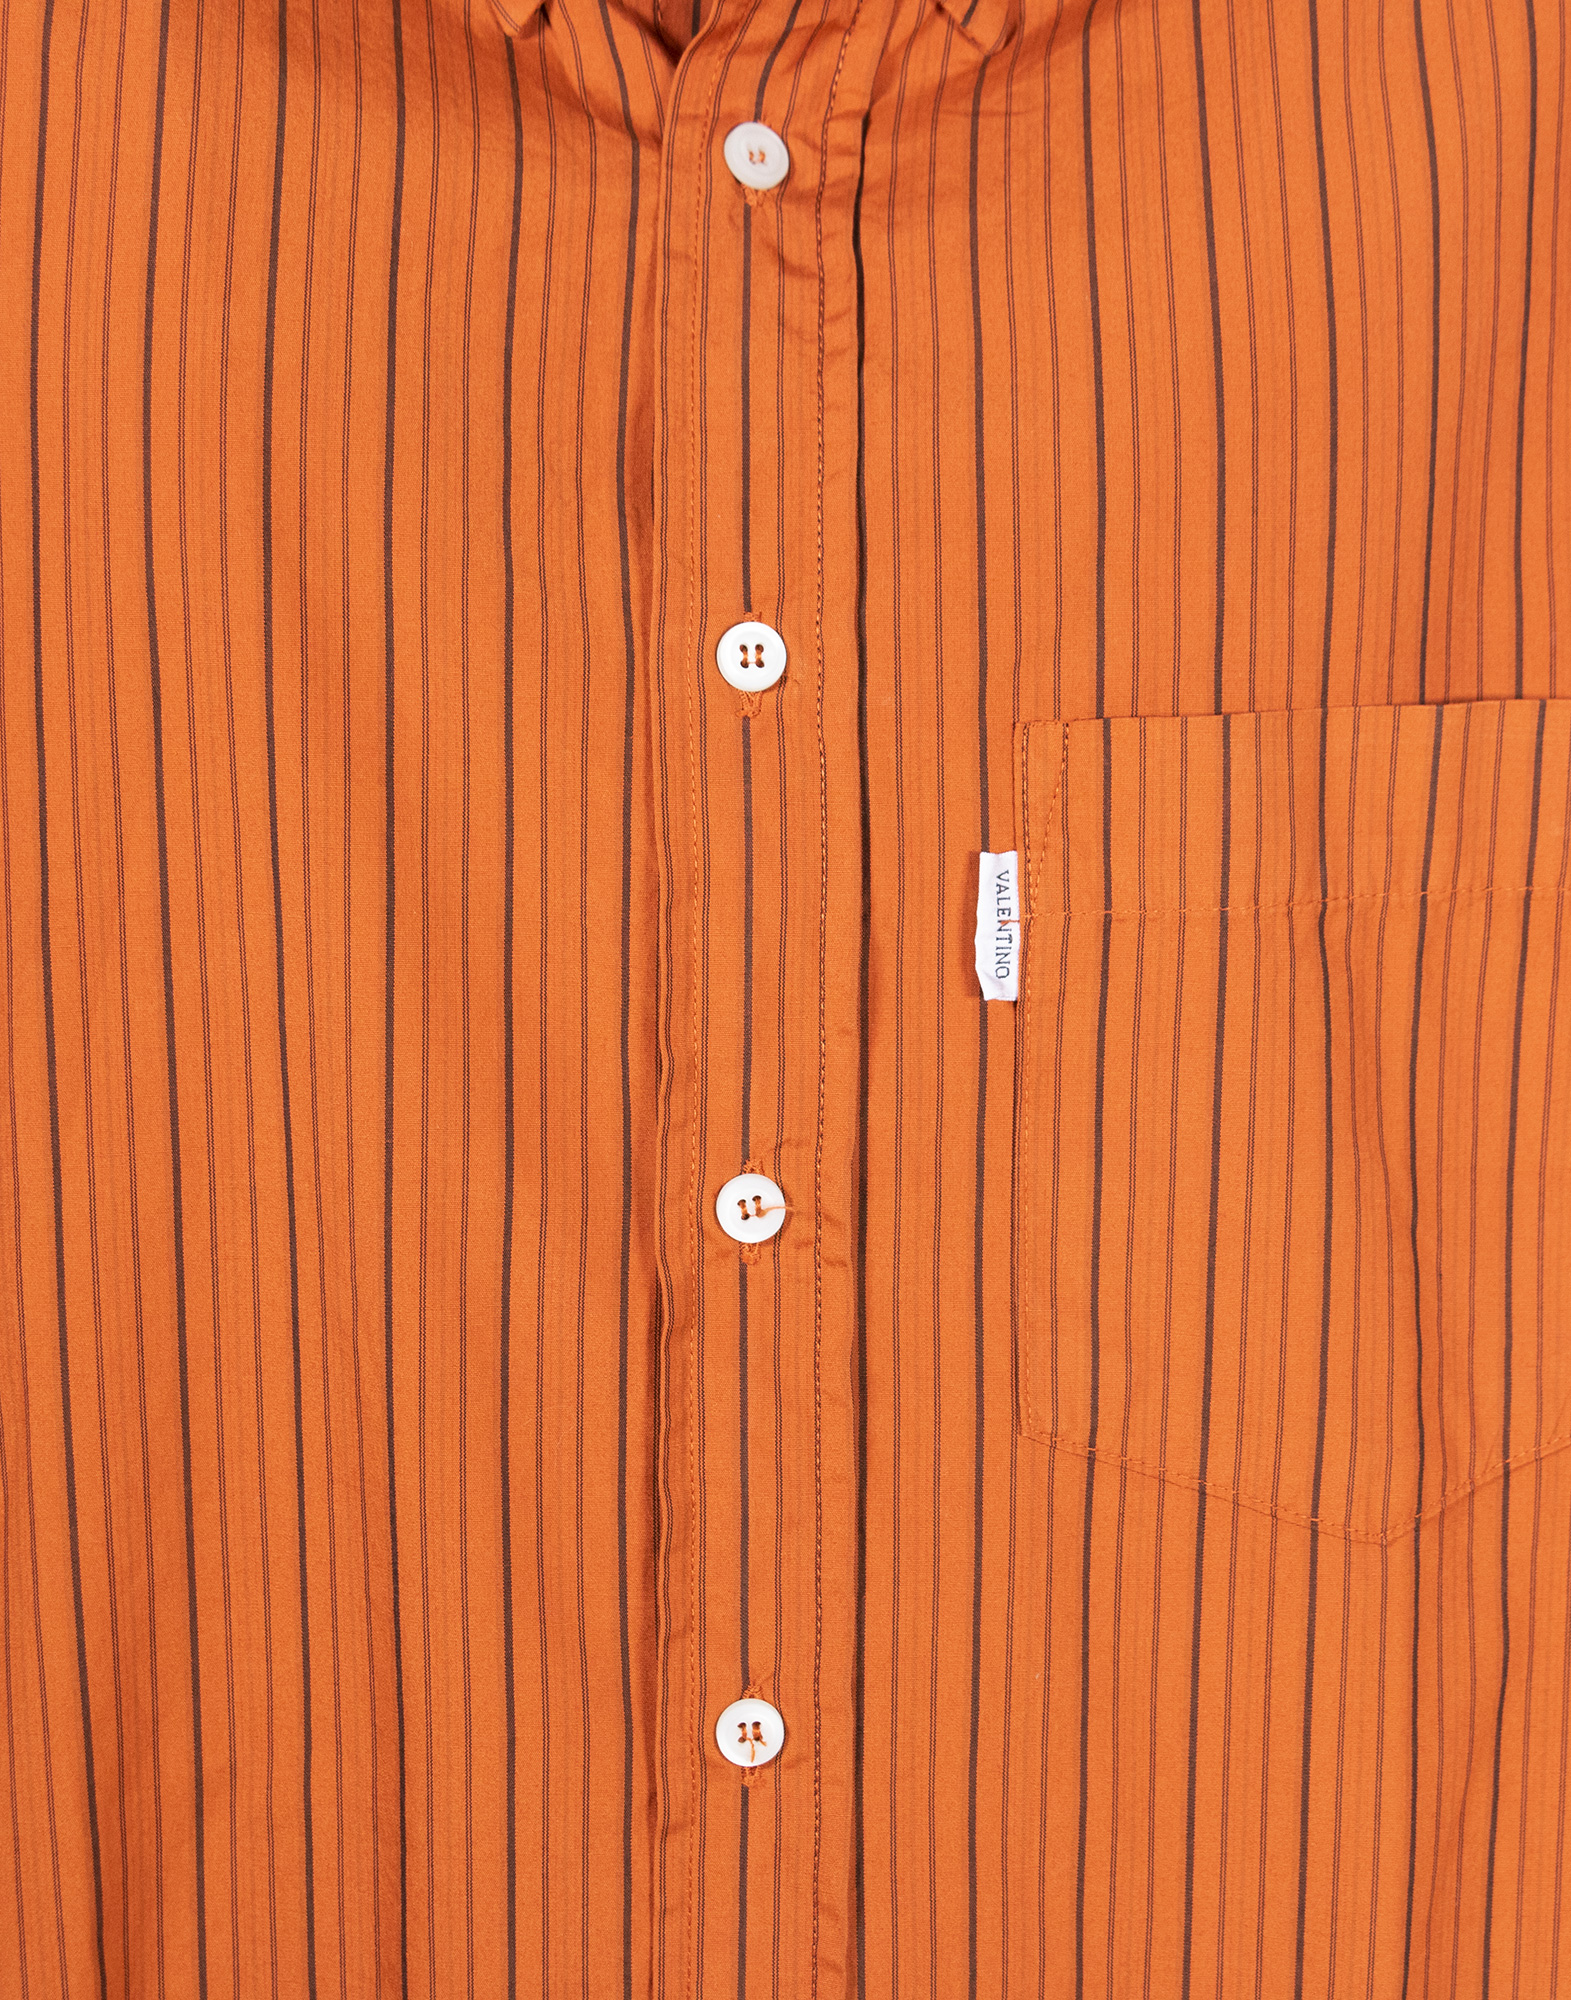 Valentino Jeans - Camicia arancione a righe